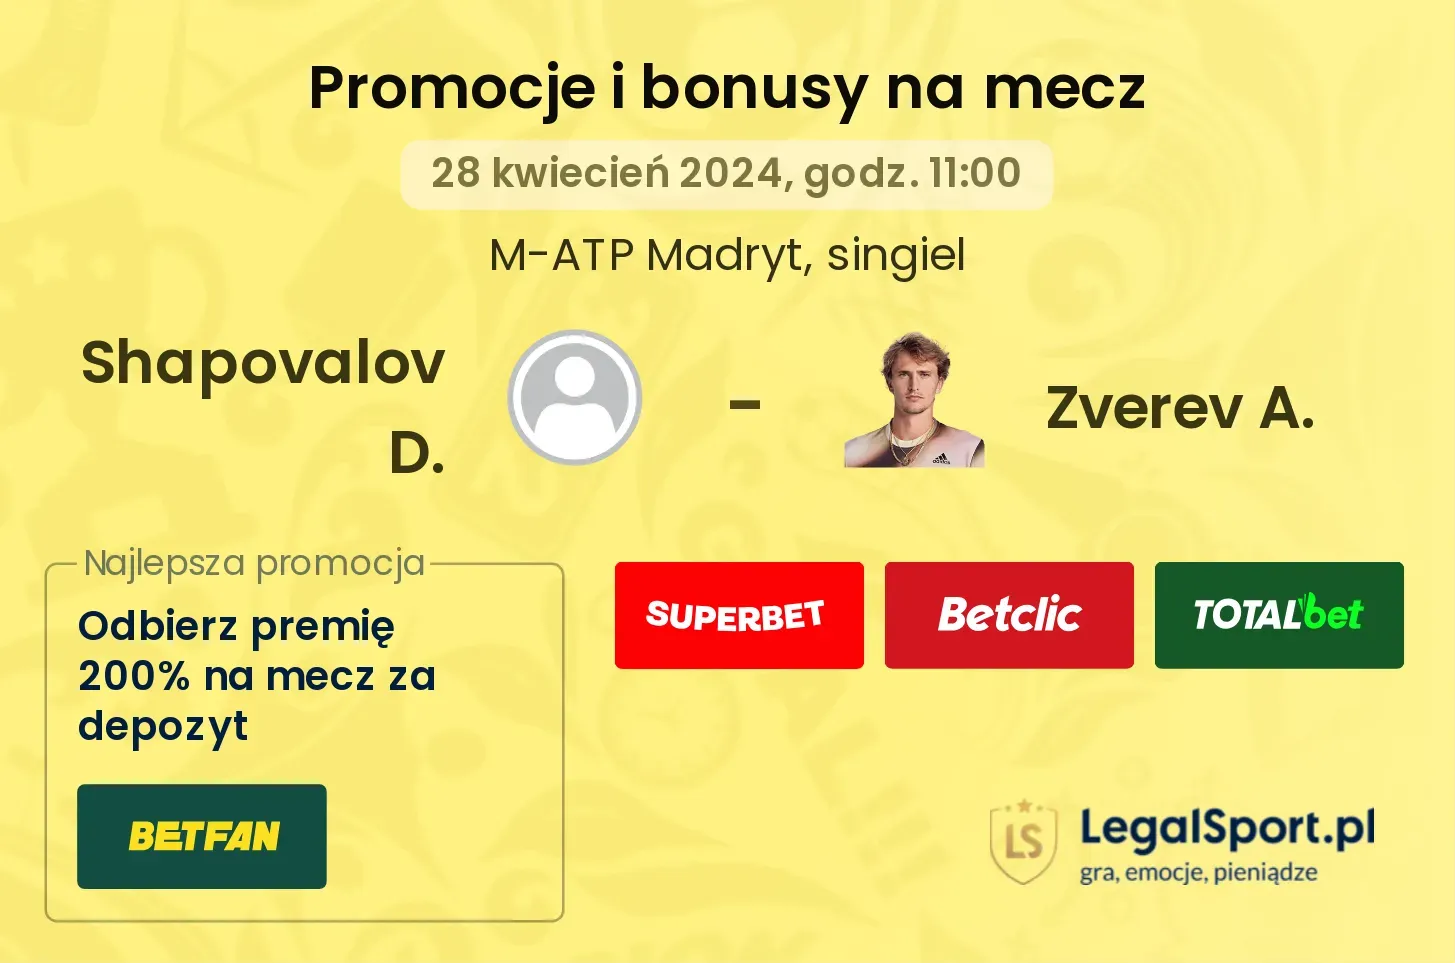 Shapovalov D. - Zverev A. promocje bonusy na mecz